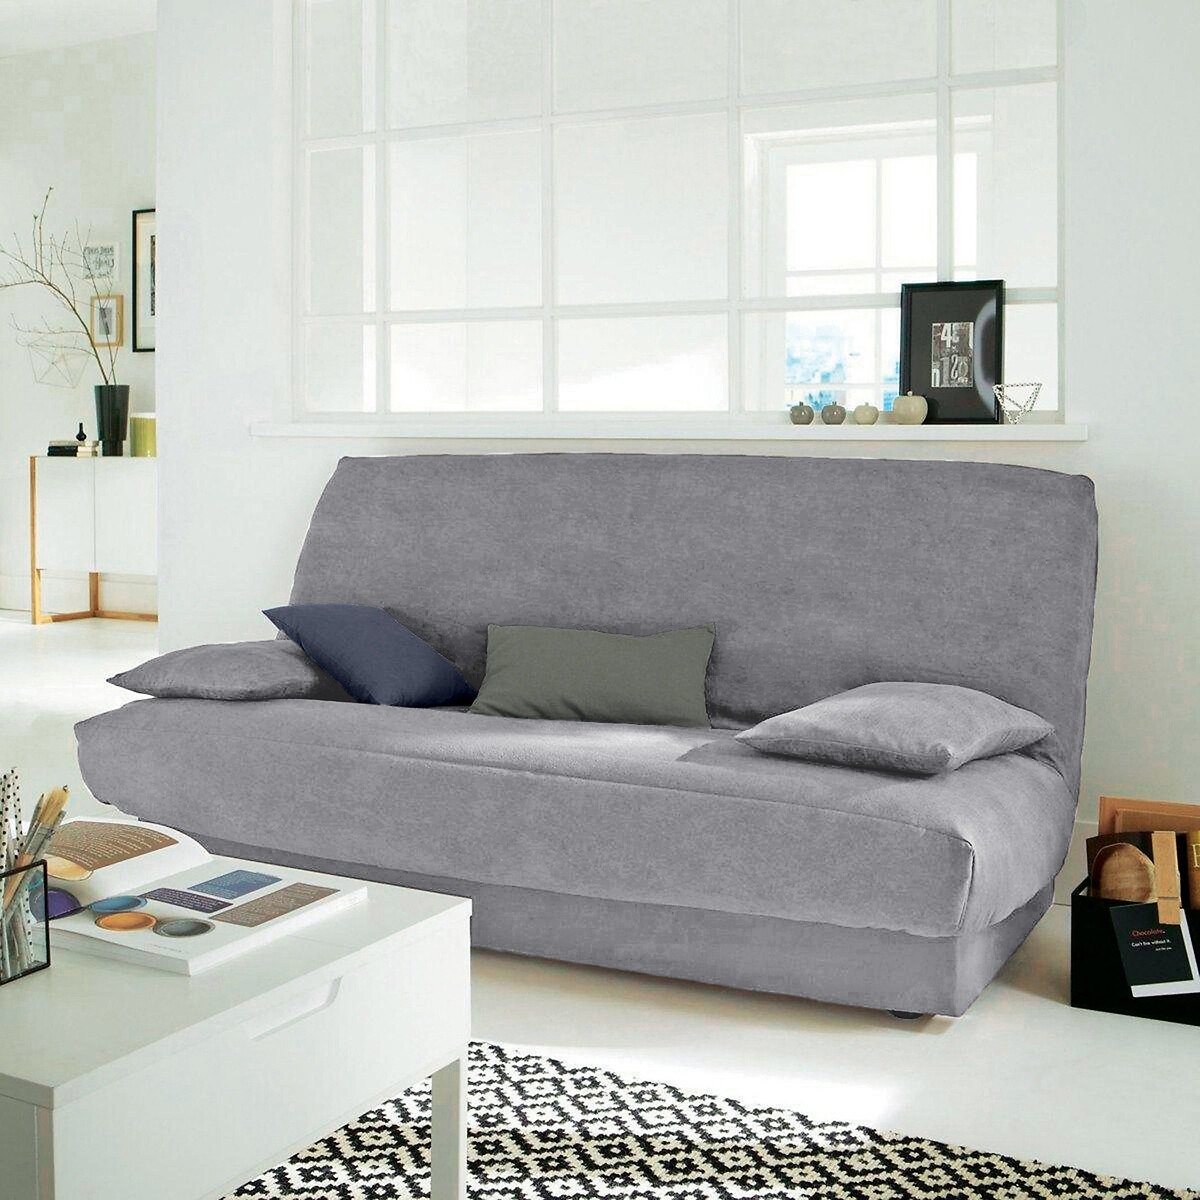 Σπίτι > Λευκά είδη > Ύφασμα, διακόσμηση > Καλύμματα καναπέ, καρέκλας > Καλύμματα για πτυσσόμενο καναπέ clic-clac, BZ Κάλυμμα βάσης από σουετίνα για καναπέ τύπου ακορντεόν One size